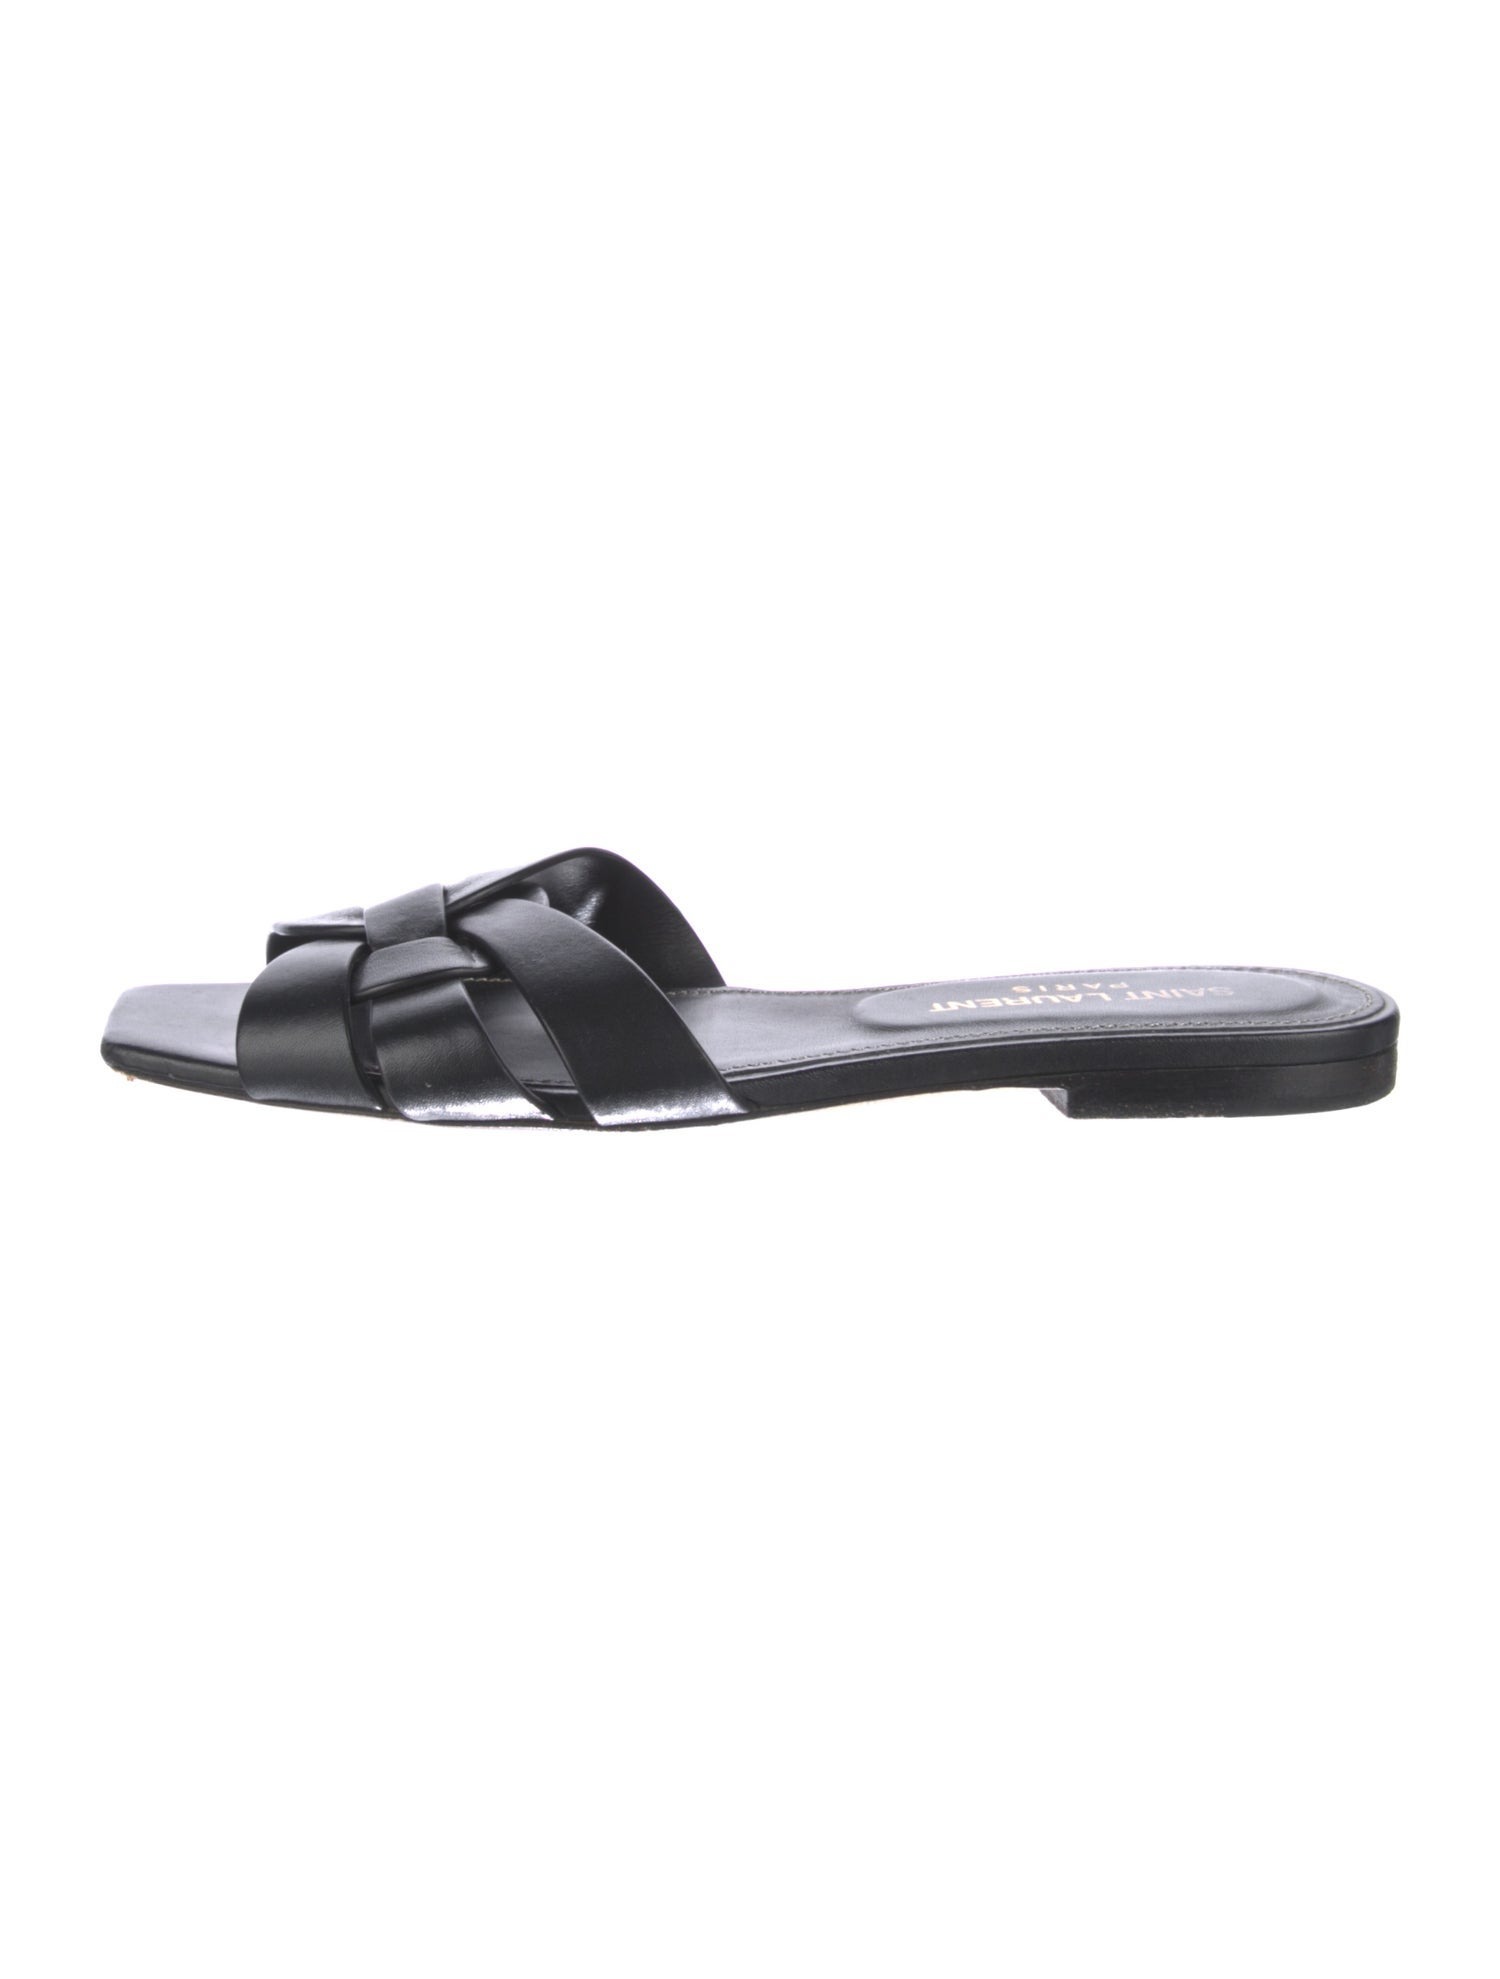 SAINT LAURENT Leather Slides Size: 5 | US5, IT35